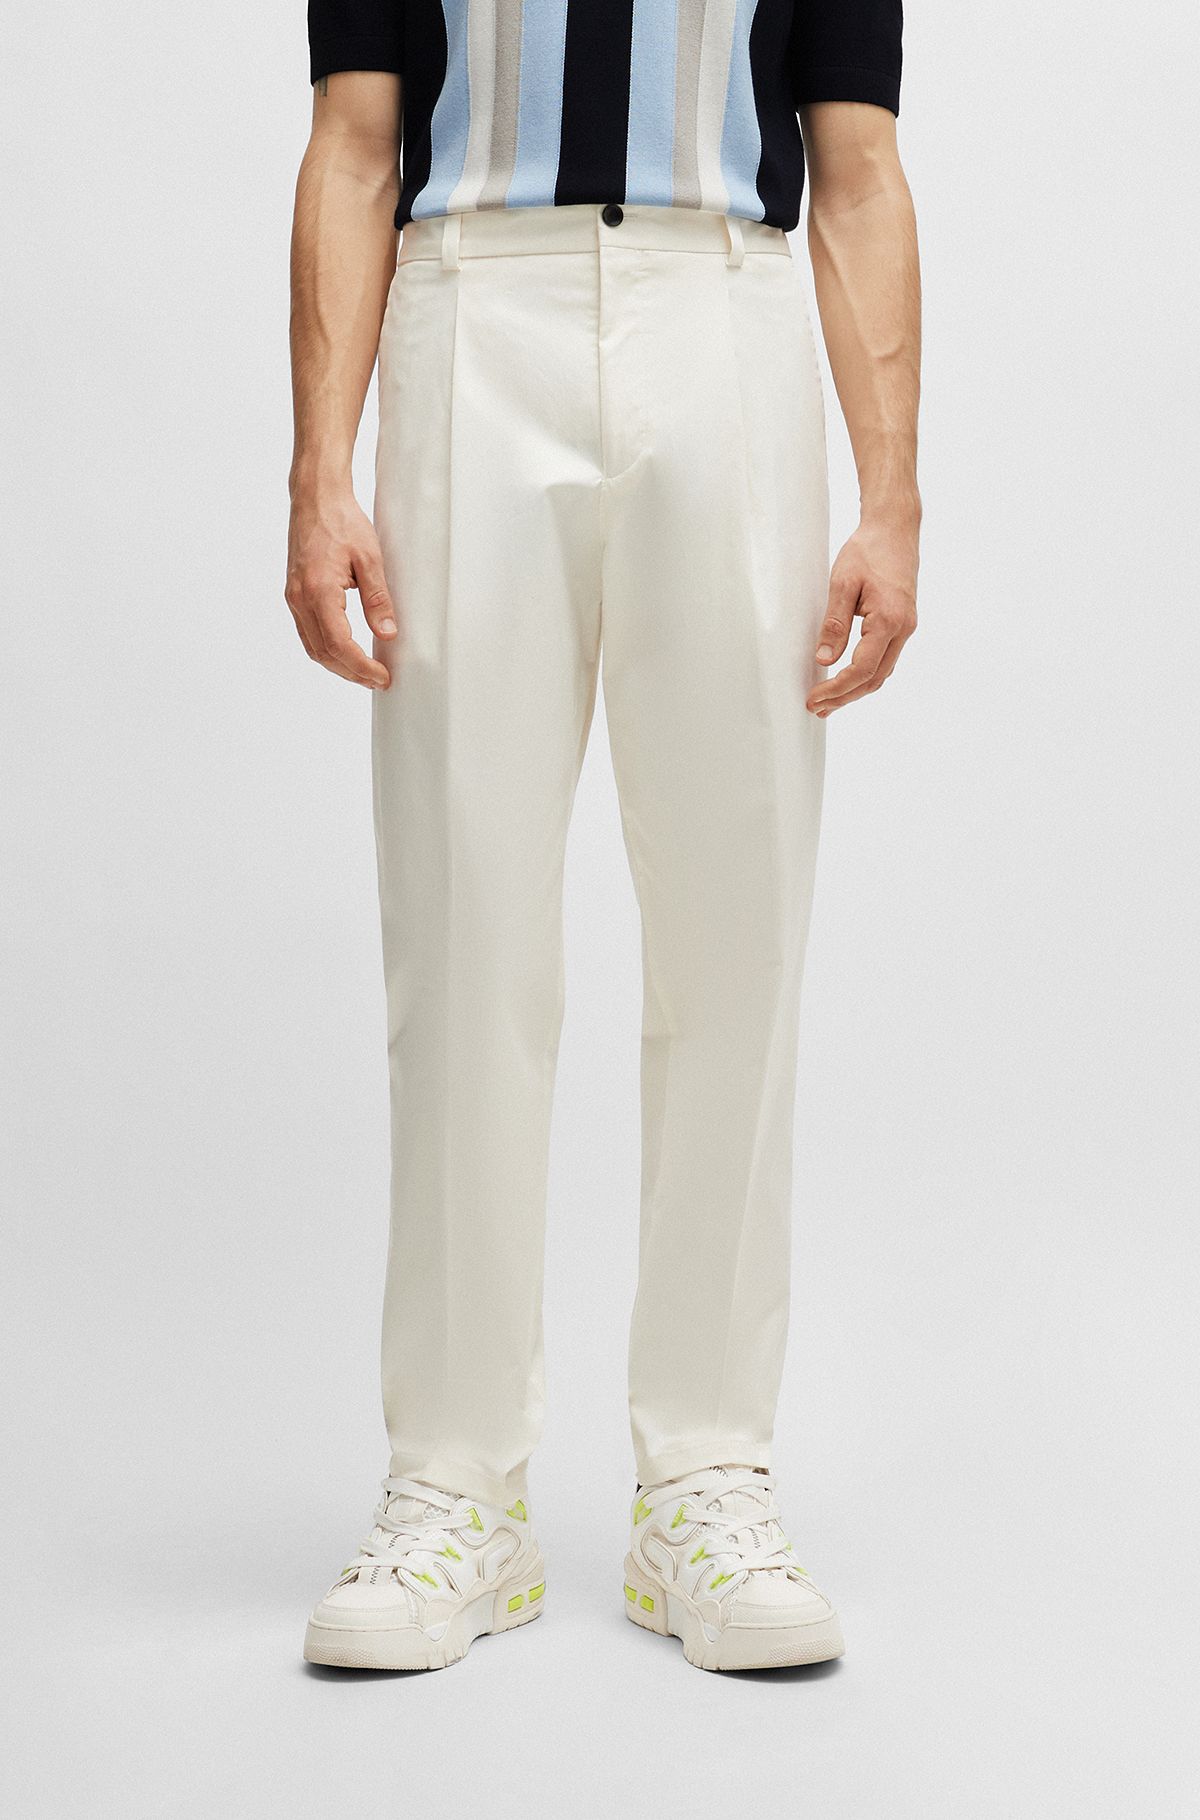 Pantalones formales de algodón elástico técnico, Blanco